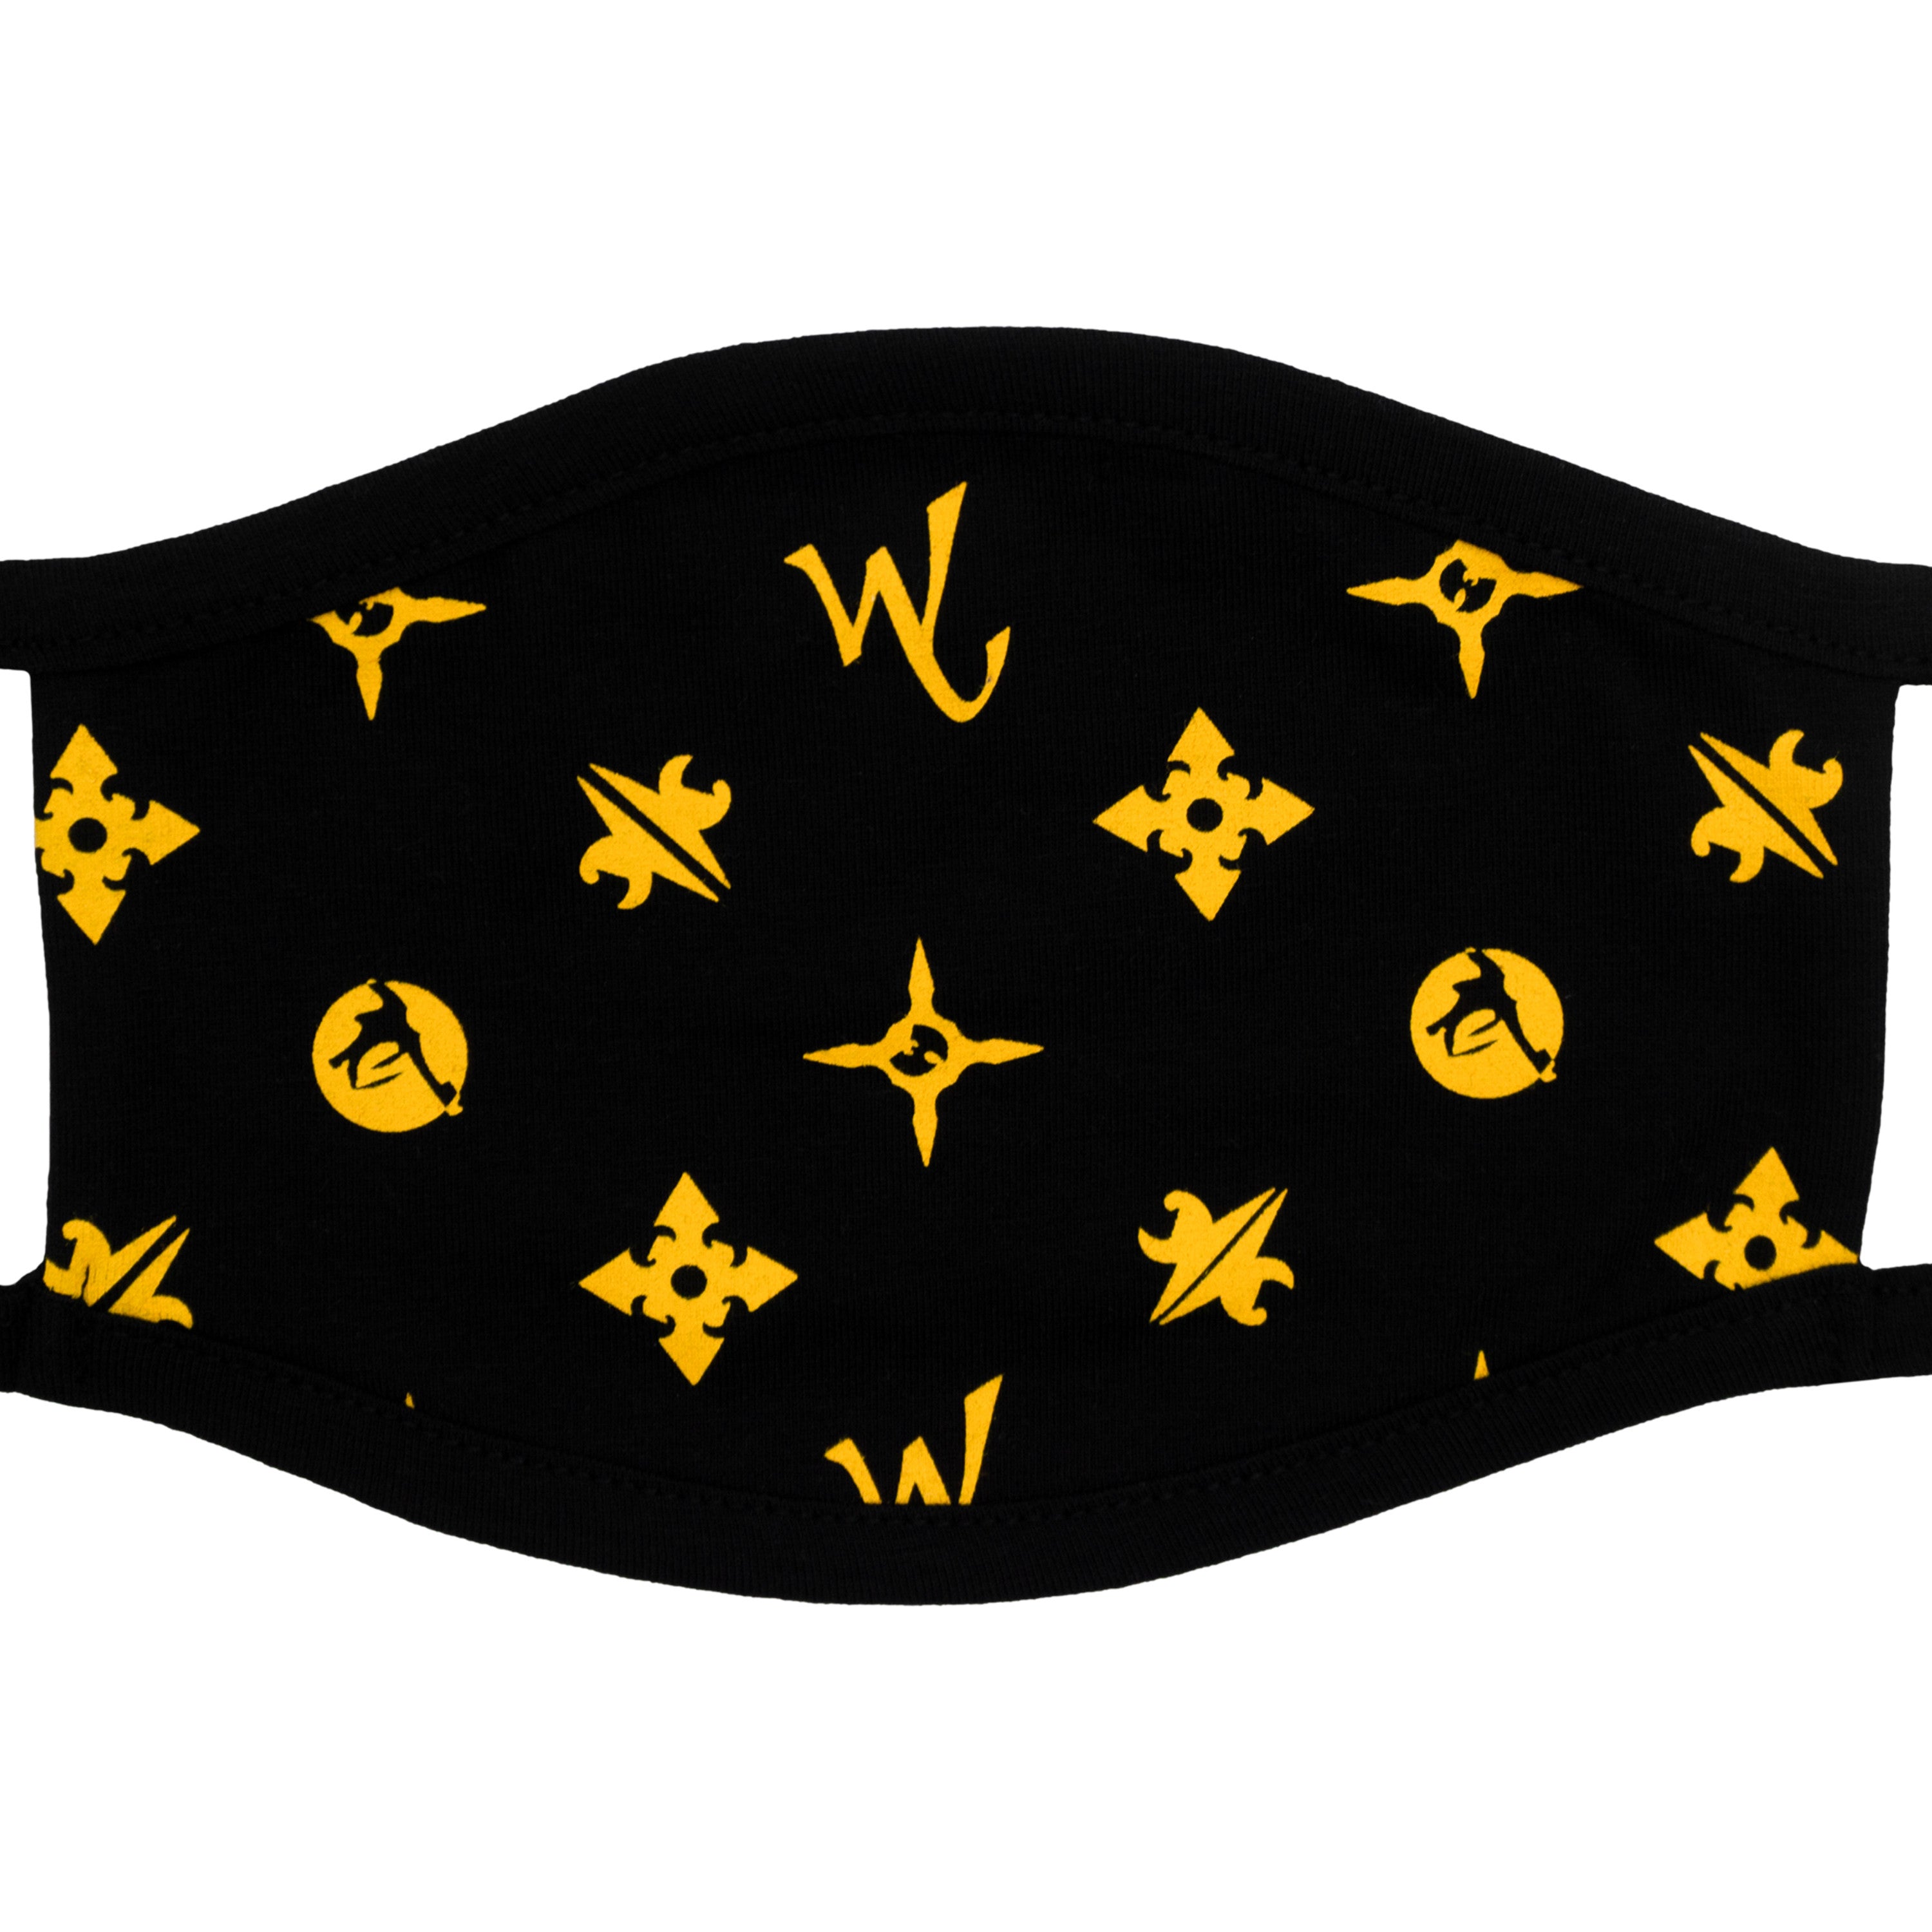 Wu Wear - Mouthguard Wuitton Face Mask - Wu Tang Clan